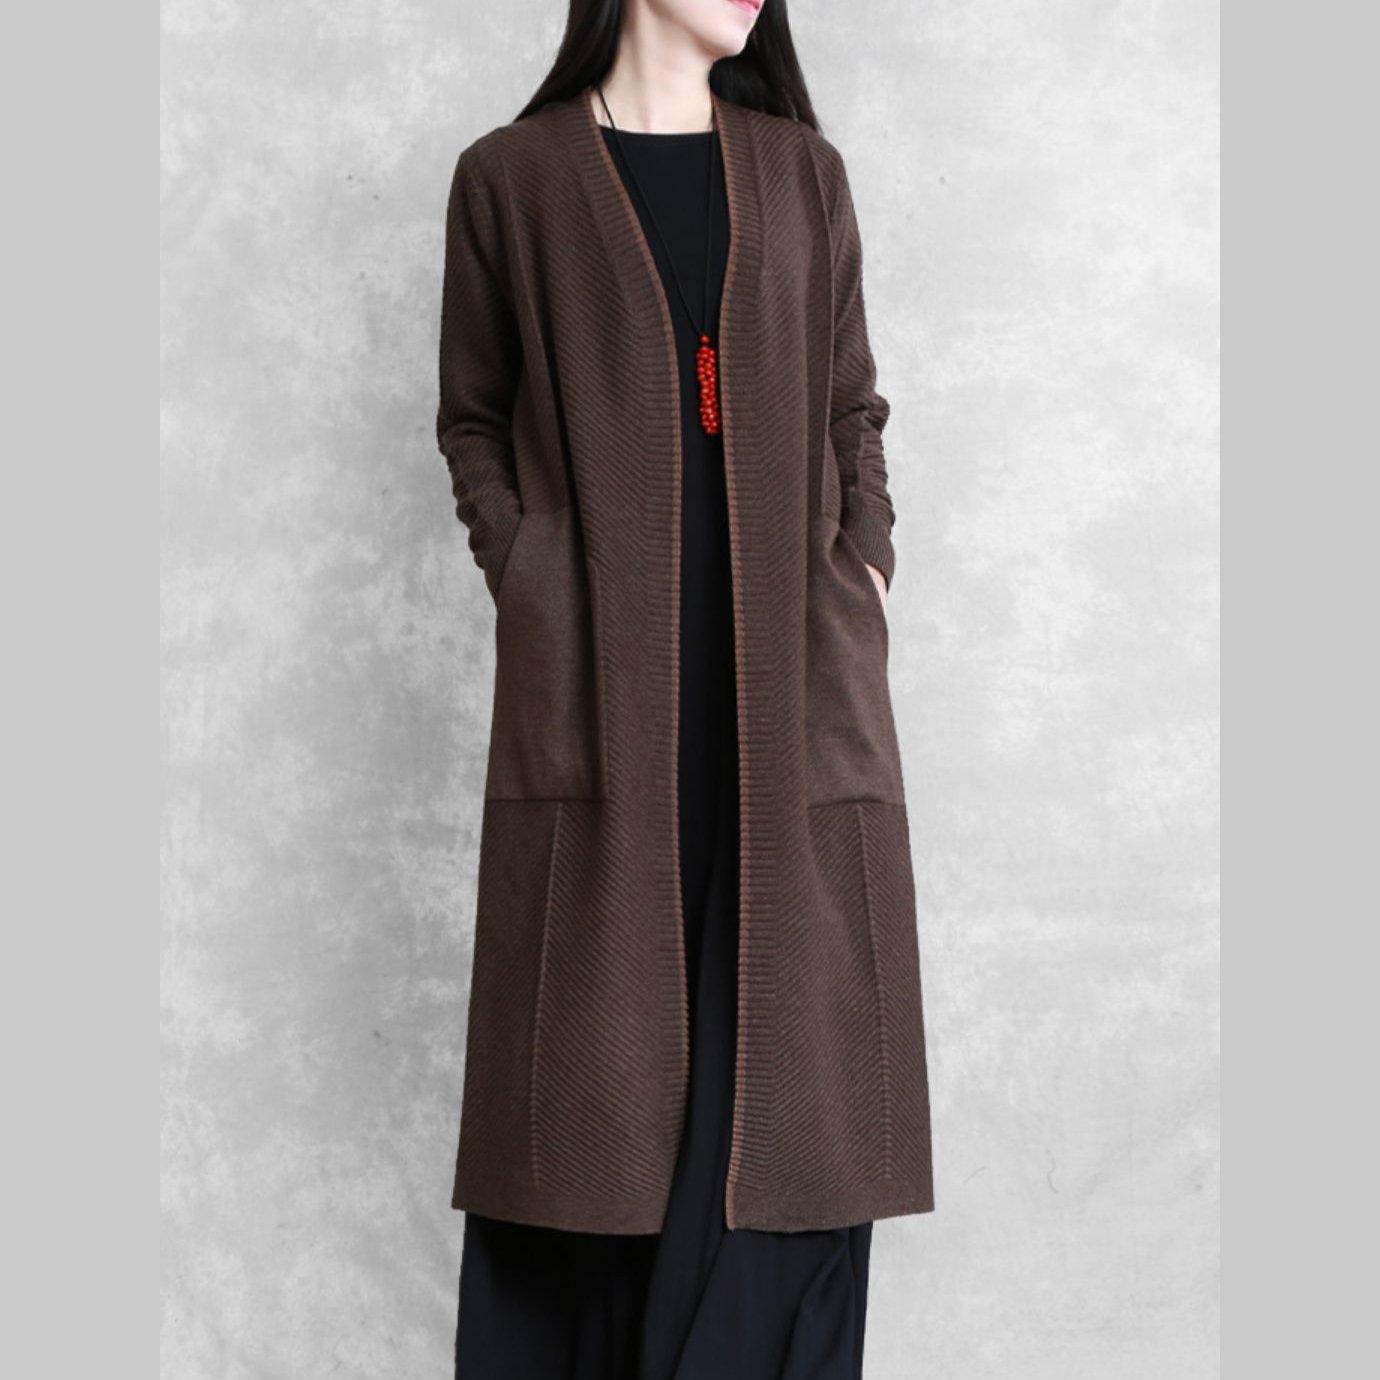 Elegant plus size long coat coat chocolate pockets coat - Omychic